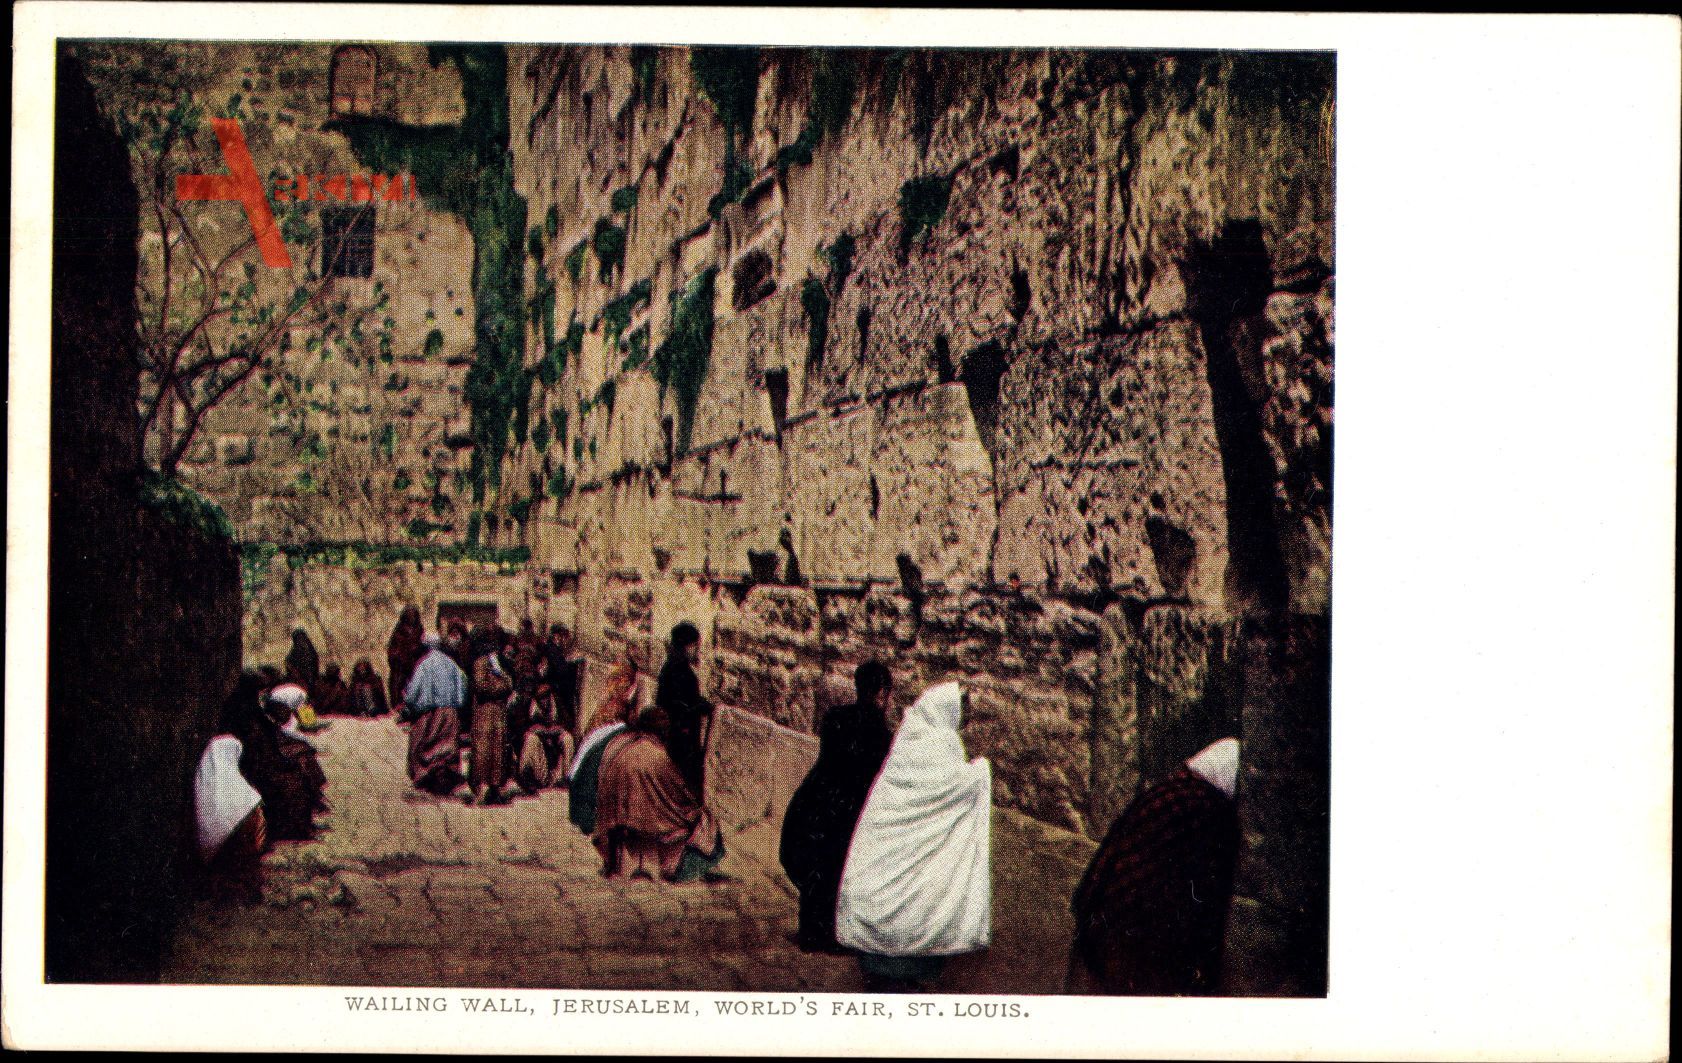 Jerusalem Israel, Wailing Wall, Worlds Fair St. Louis, Klagemauer, Juden